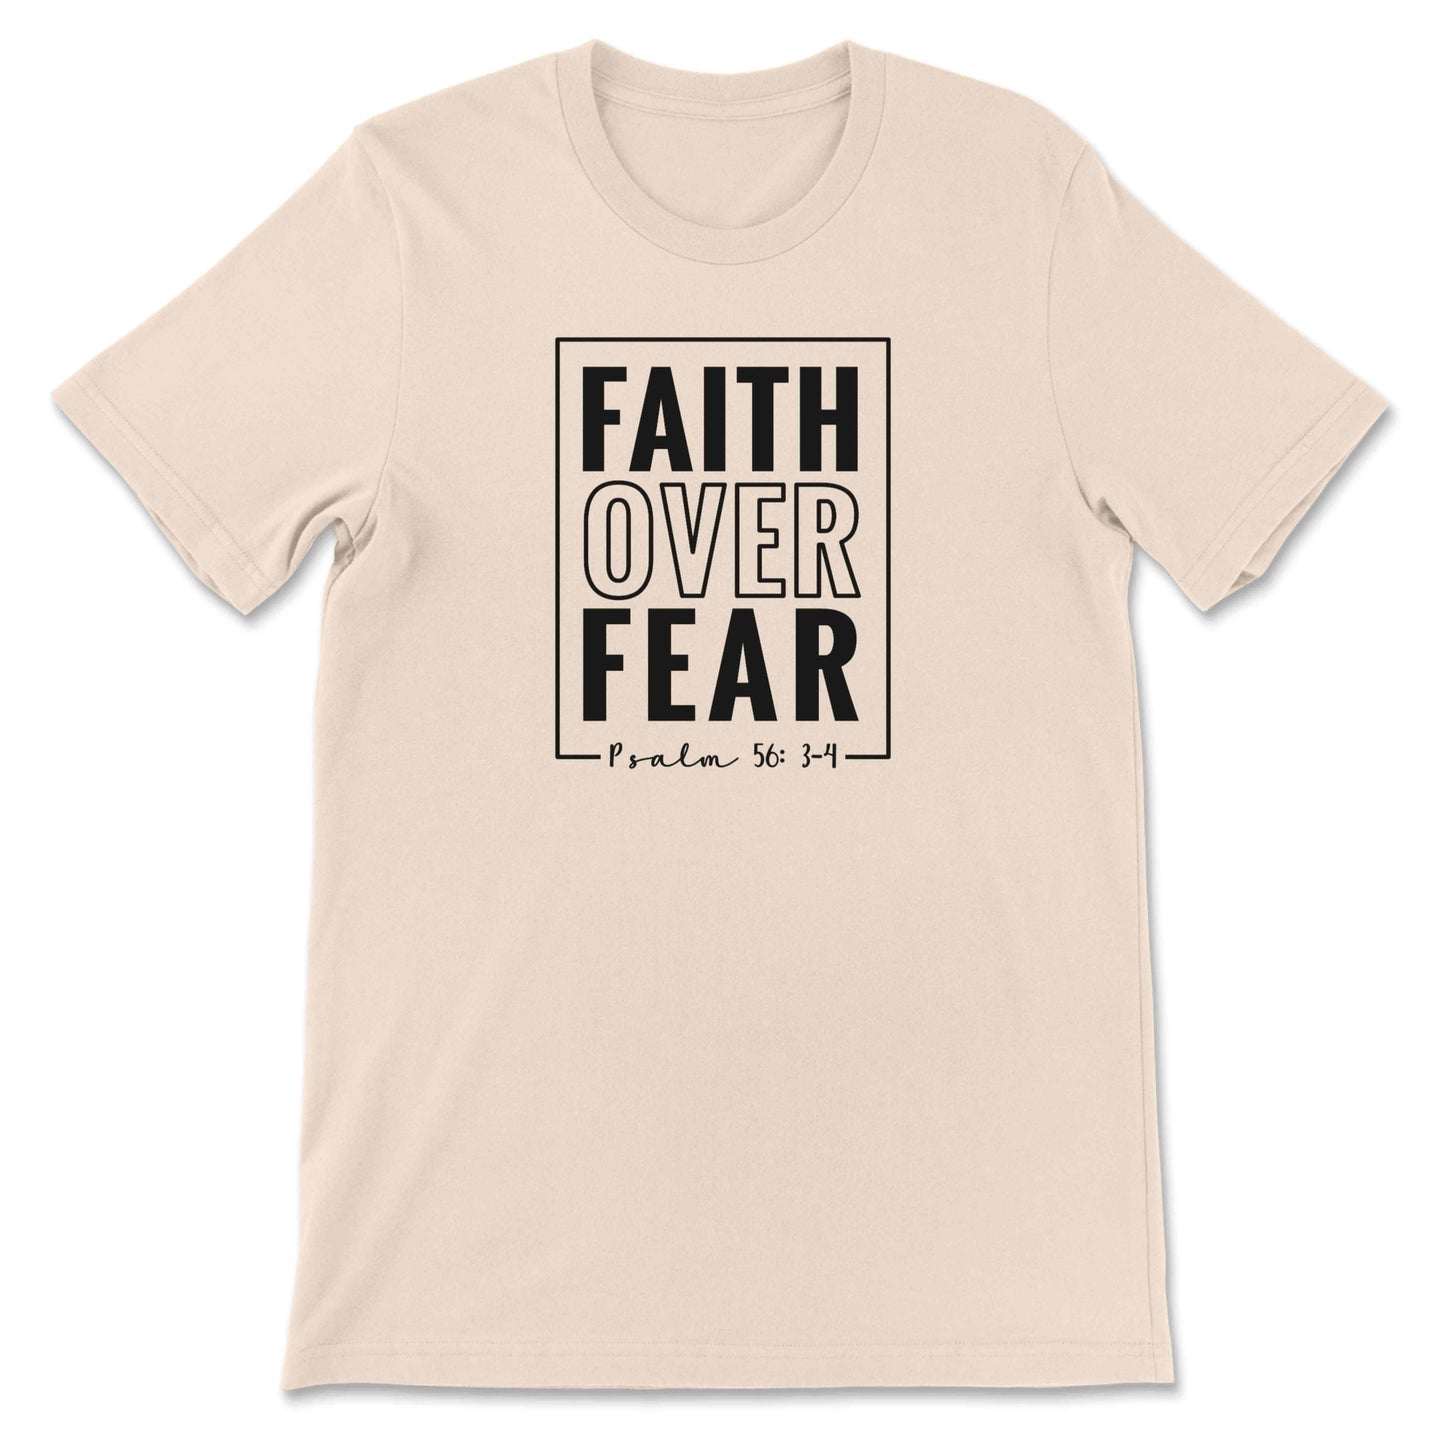 Faith Over Fear Graphic T-shirt Sand Bhooki